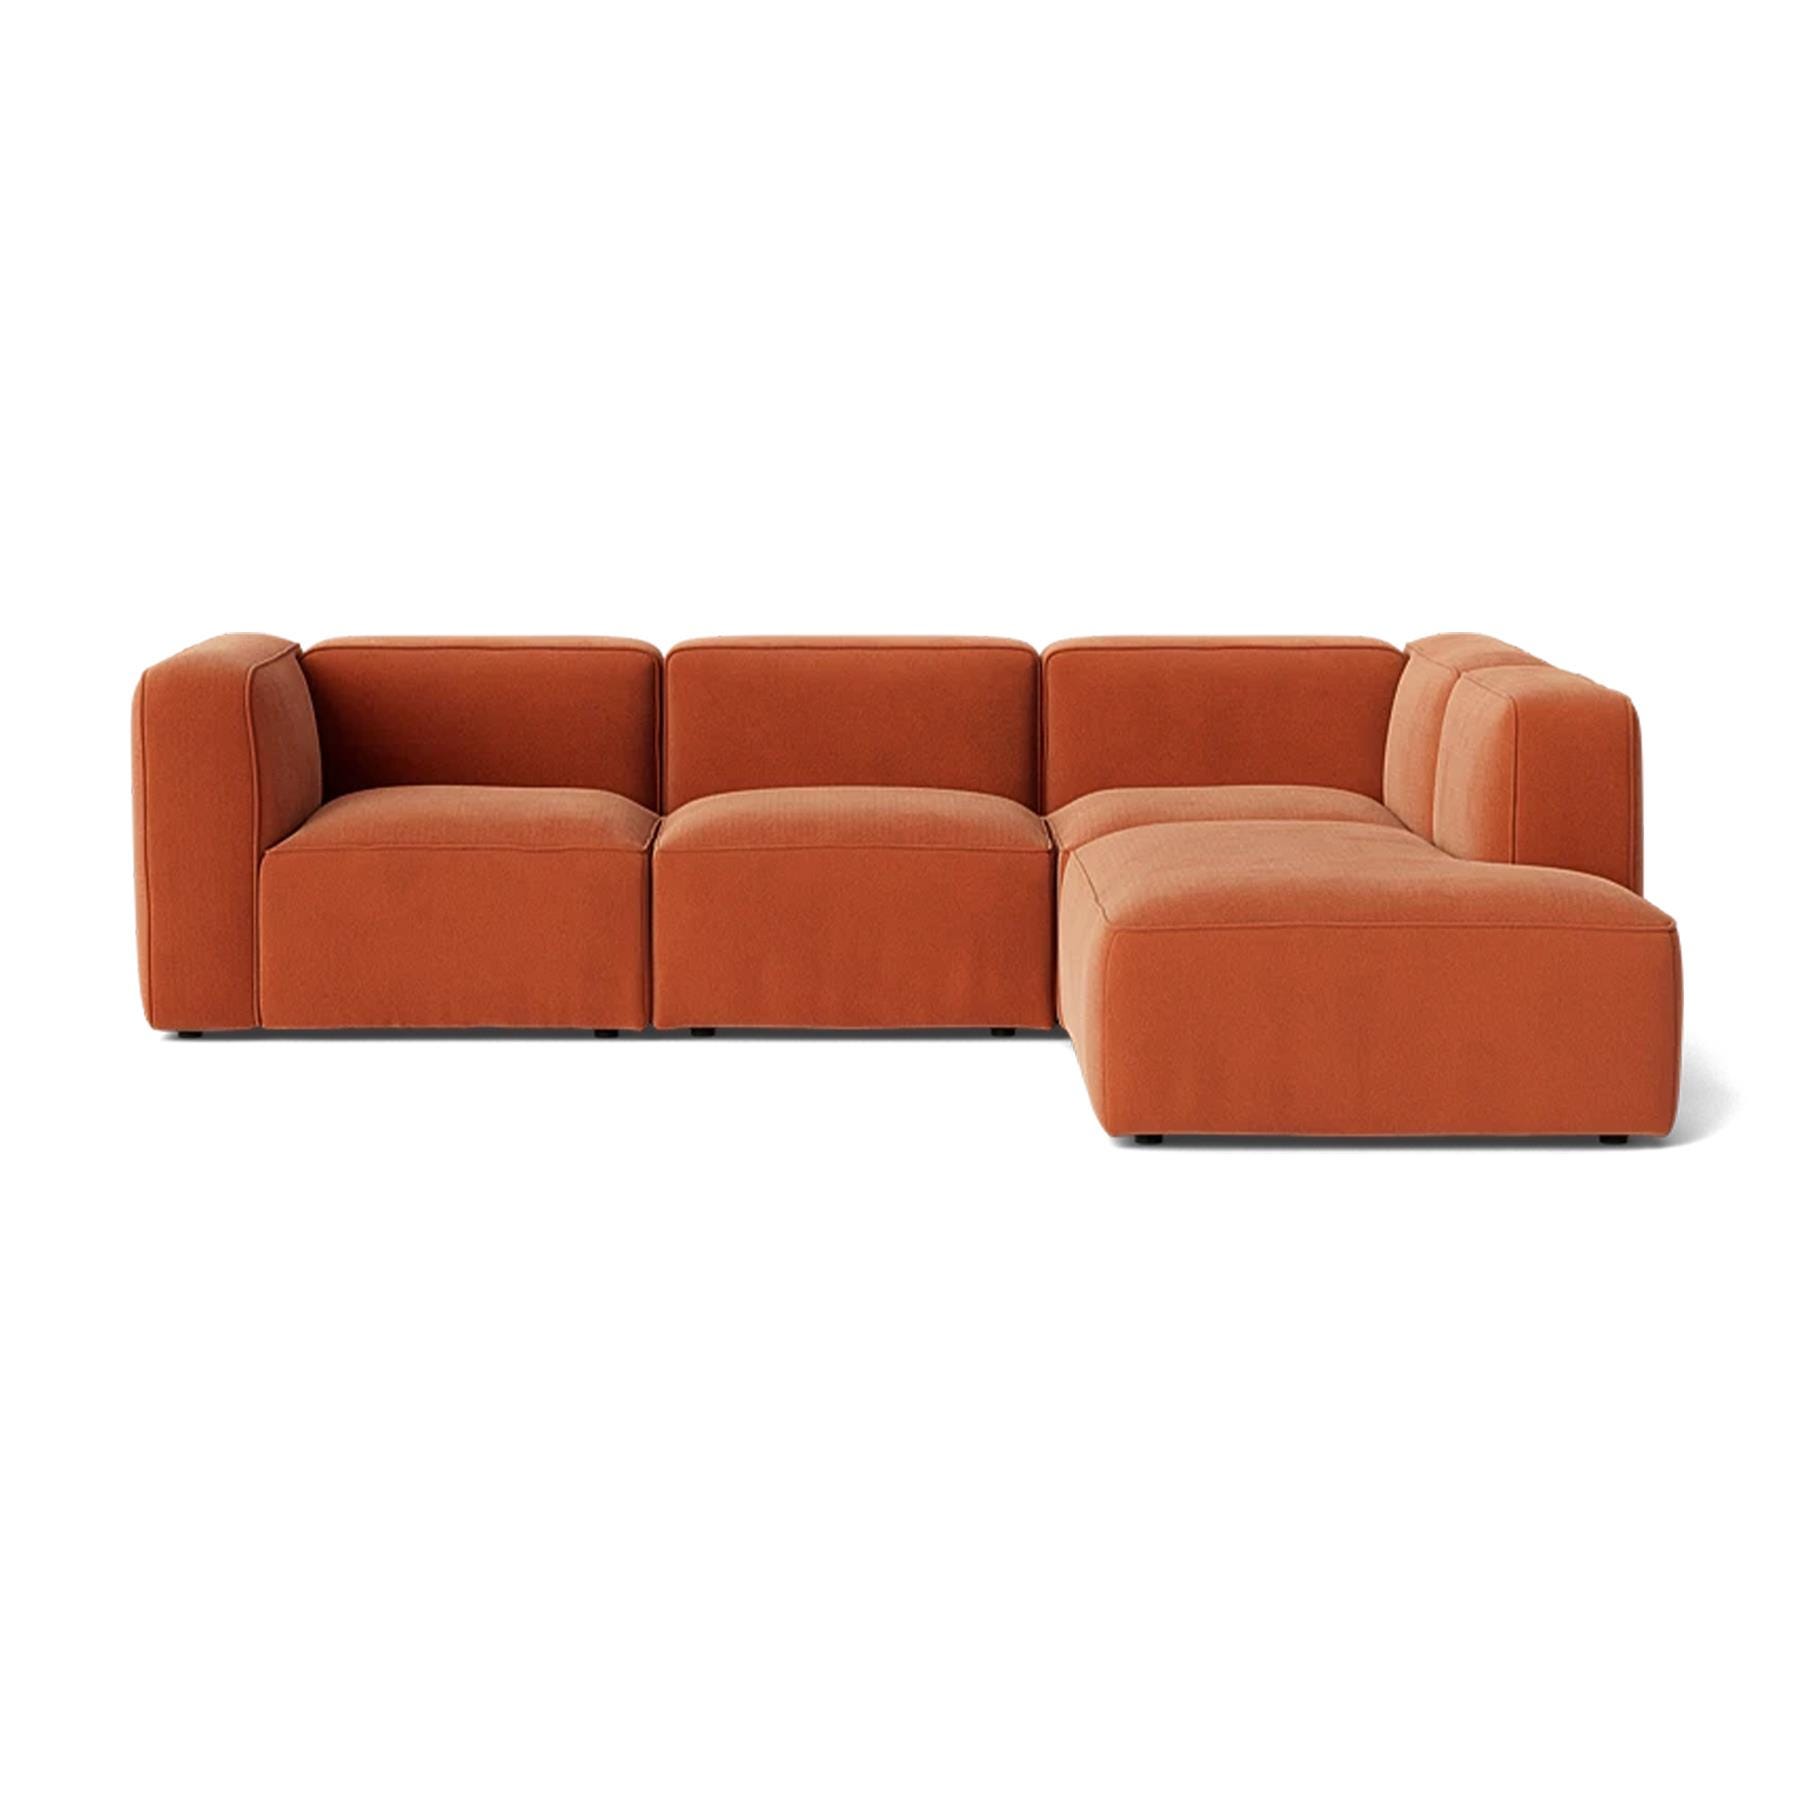 Make Nordic Basecamp Small Family Sofa Nordic Velvet 100 Right Orange Designer Furniture From Holloways Of Ludlow